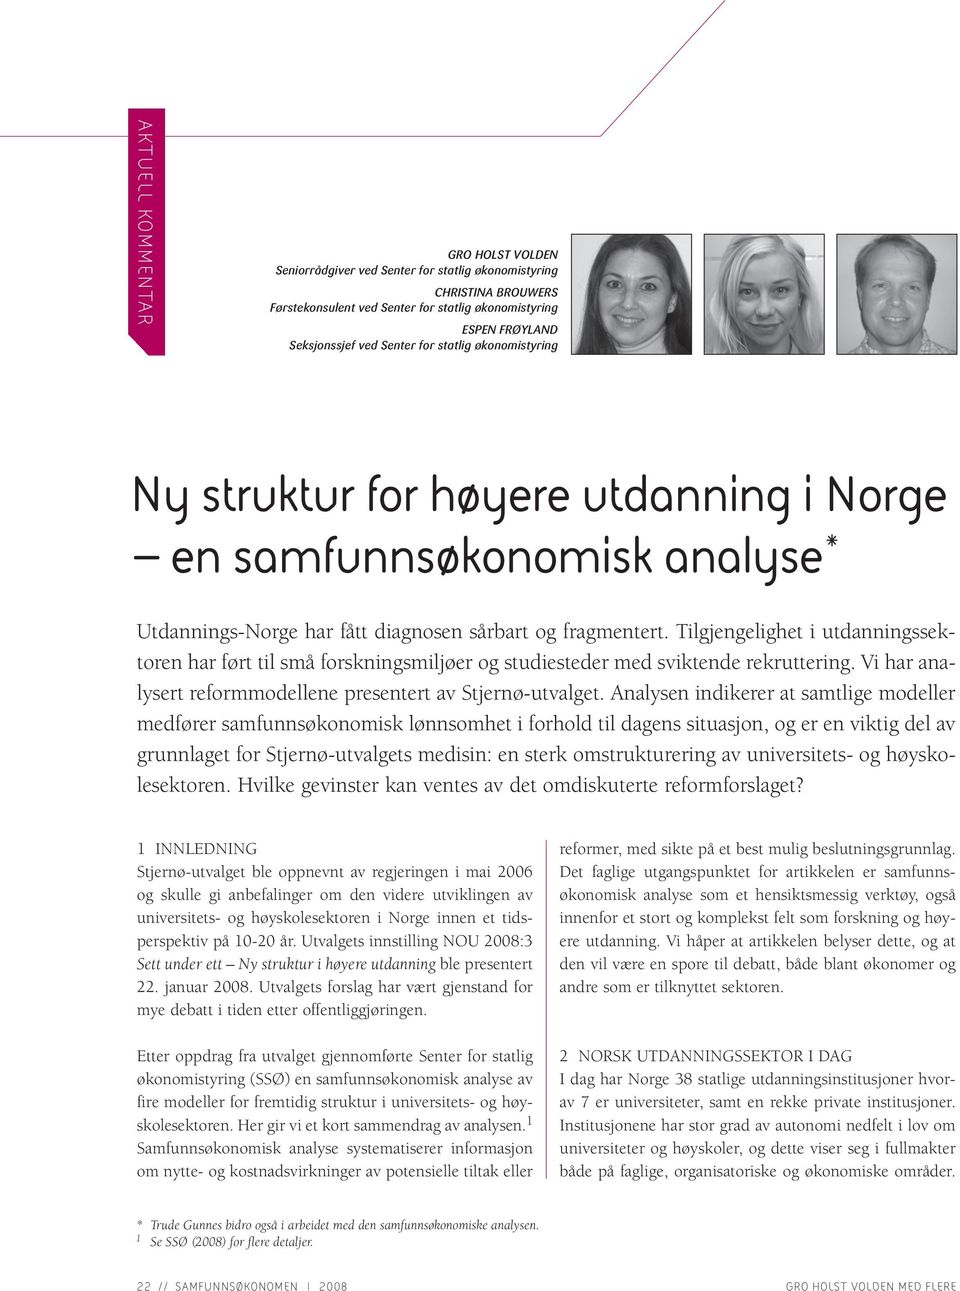 Tilgjengelighet i utdanningssektoren har ført til små forskningsmiljøer og studiesteder med sviktende rekruttering. Vi har analysert reformmodellene presentert av Stjernø-utvalget.